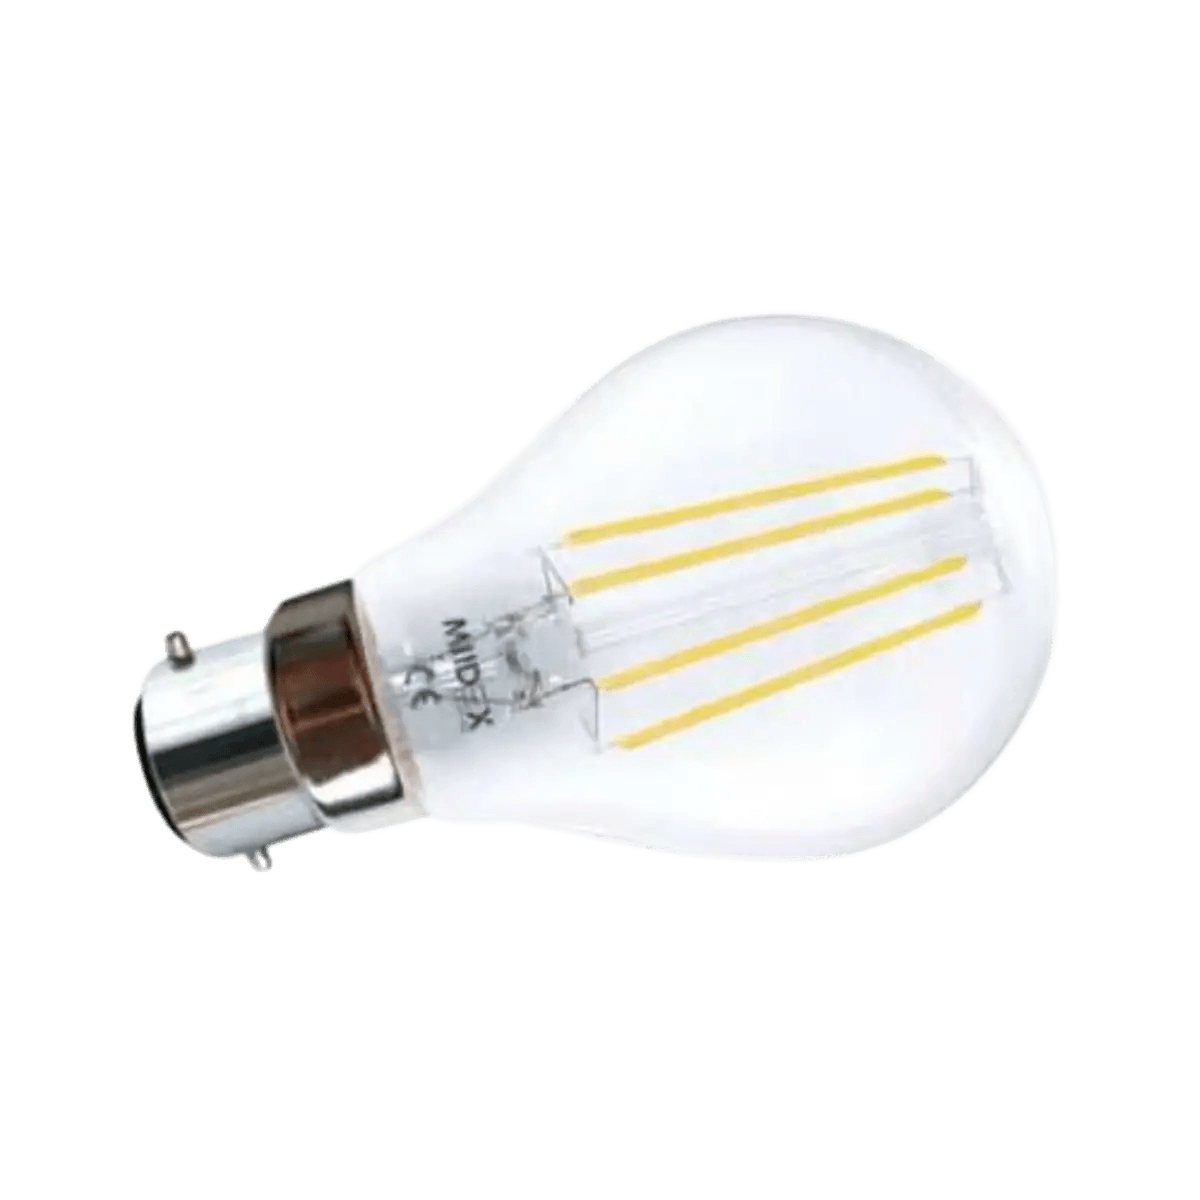 Accessoires Energie - Ampoule LED B22 220V AC dépolie 10W 2700K